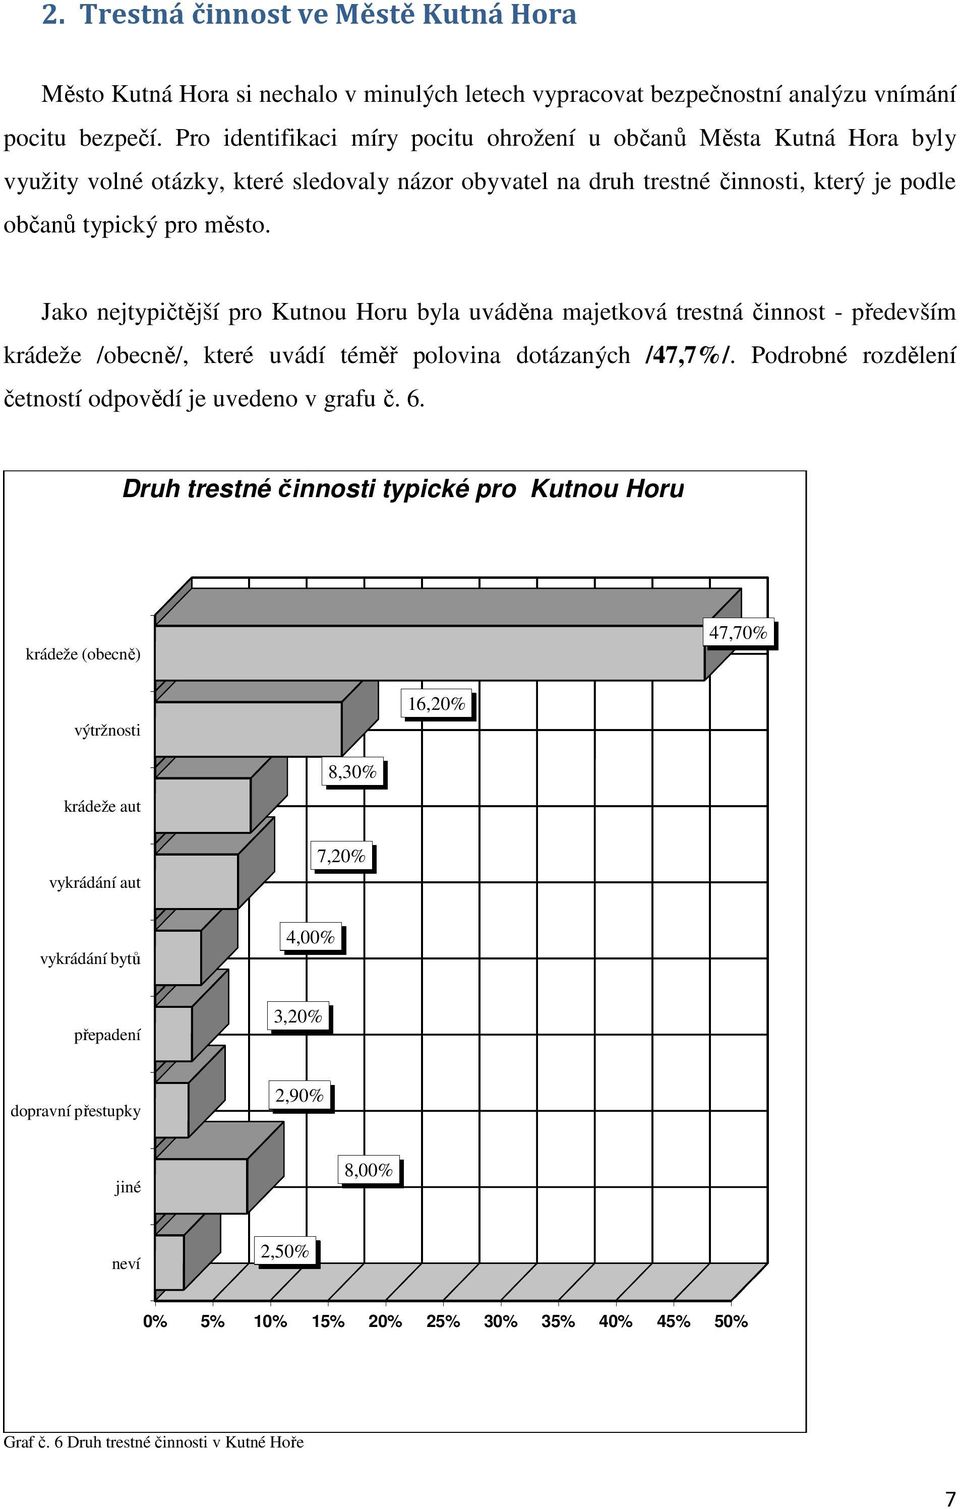 Jako nejtypičtější jší pro Kutnou Horu byla uváděna majetková trestná činnost - především krádeže /obecně/, které uvádí téměř polovina dotázaných /47,7%/.